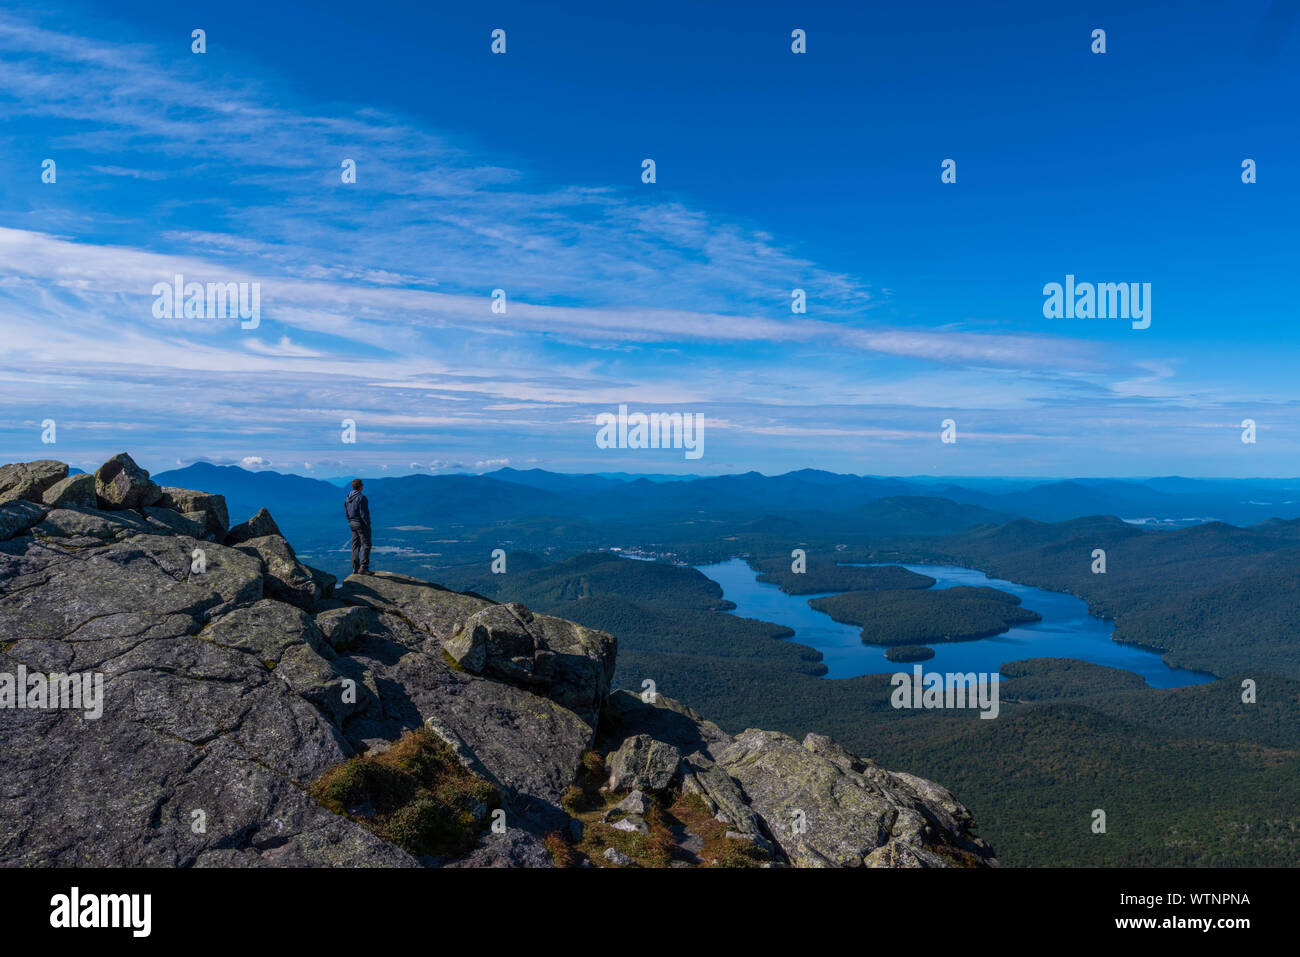 In cima alla Whiteface Mountain, ammira il panorama mozzafiato che si affaccia sul lago Placid Foto Stock